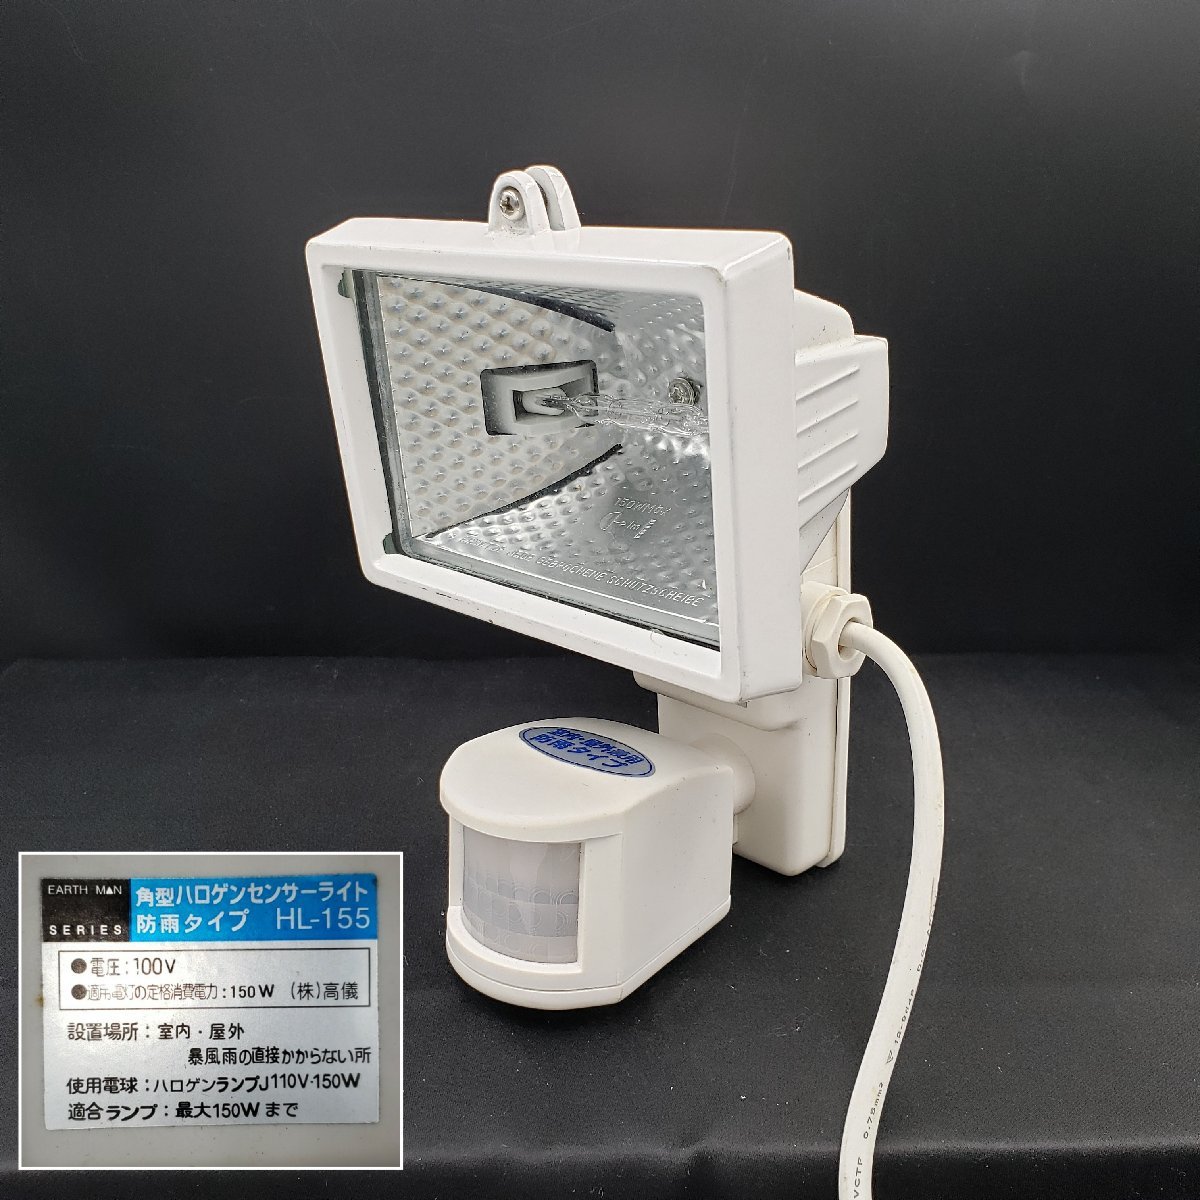  rectangle halogen sensor light rainproof type HL-155 sensor light crime prevention indoor for outdoors for halogen light electrification verification settled ( stock ) height .[80s1025]